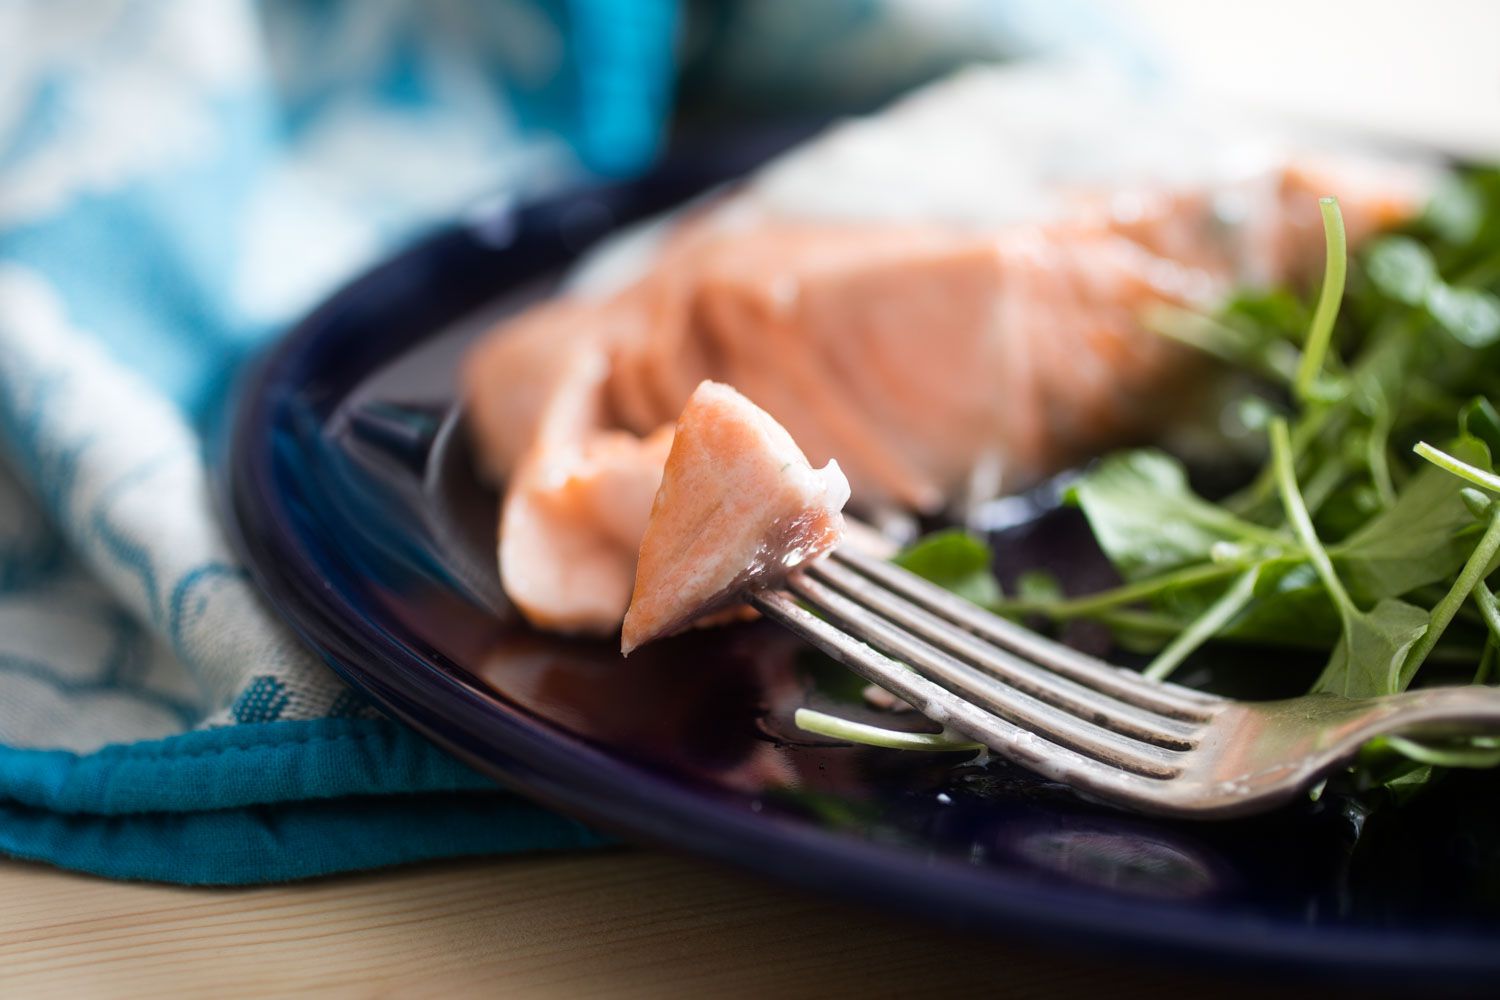 把三文鱼串在叉子上咬一口。叉子放在一个深蓝色的盘子里。在模糊的背景中有更多的鲑鱼和绿色蔬菜。gydF4y2Ba